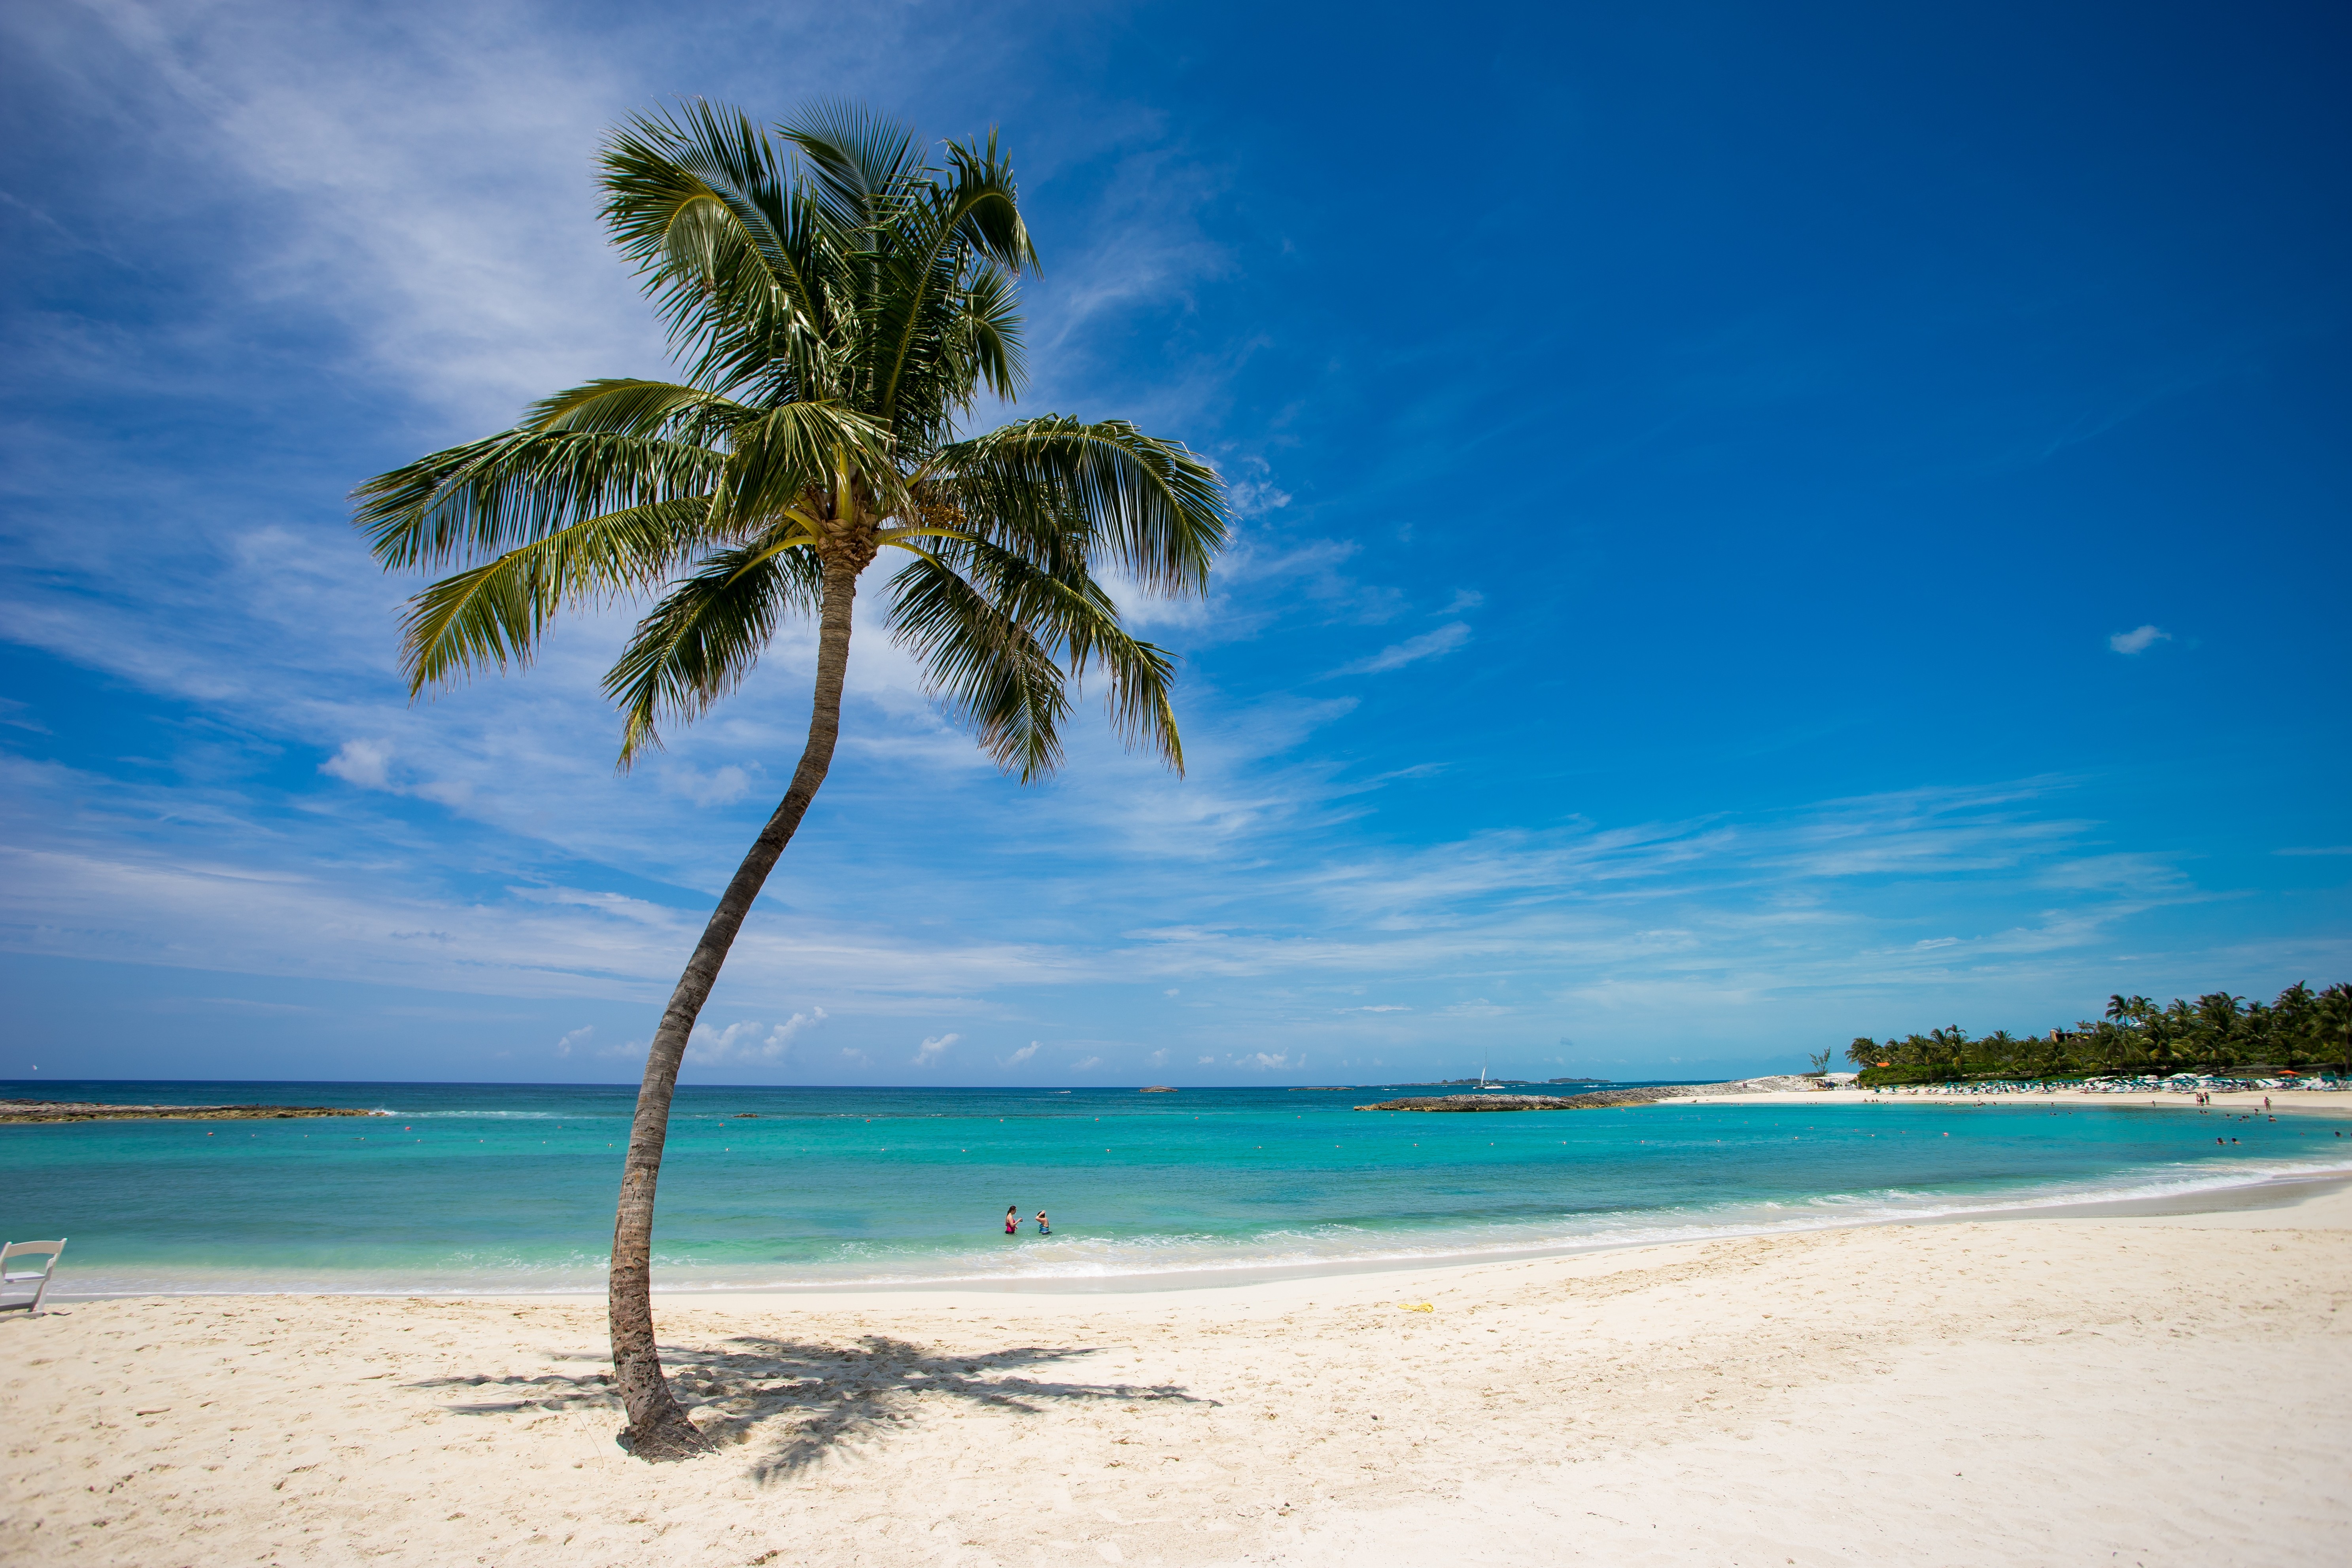 General 5948x3965 palm trees beach sea tropical lagoon island